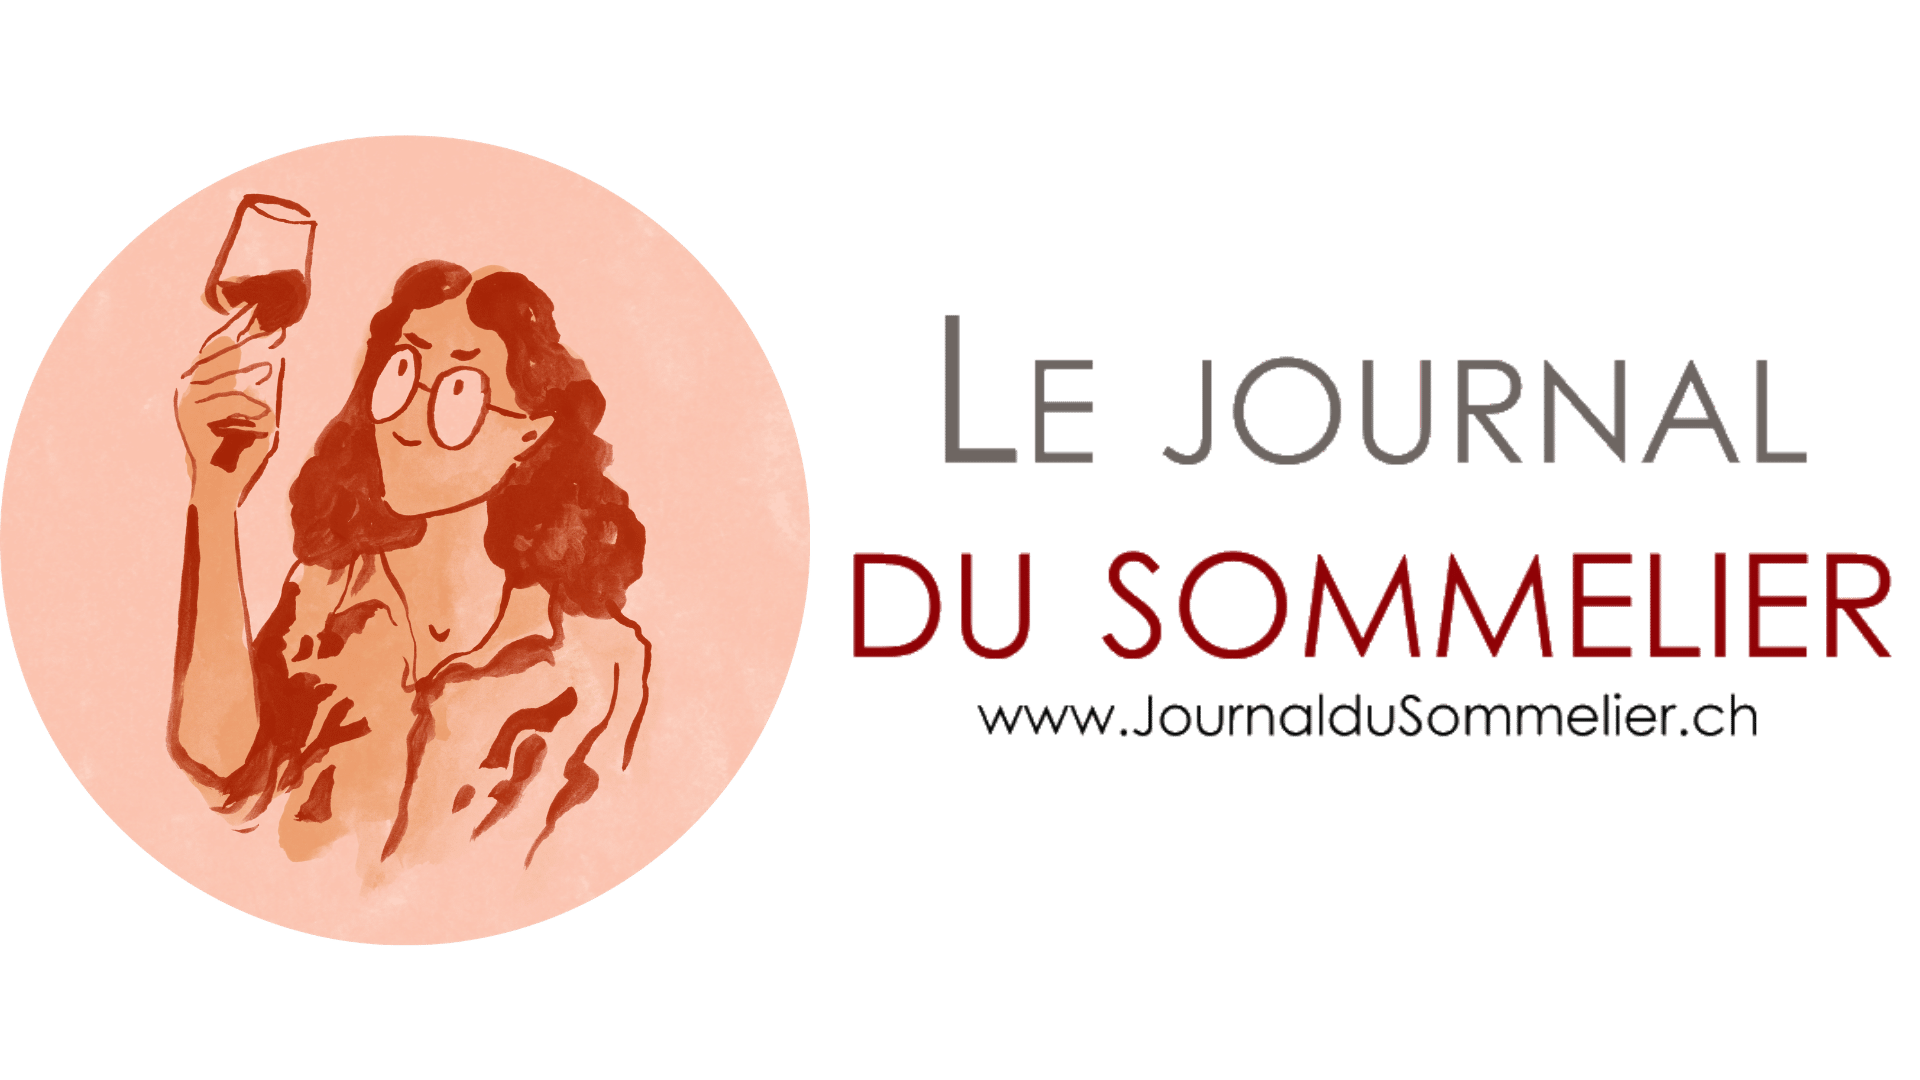 The logo of Journal Du Sommelier